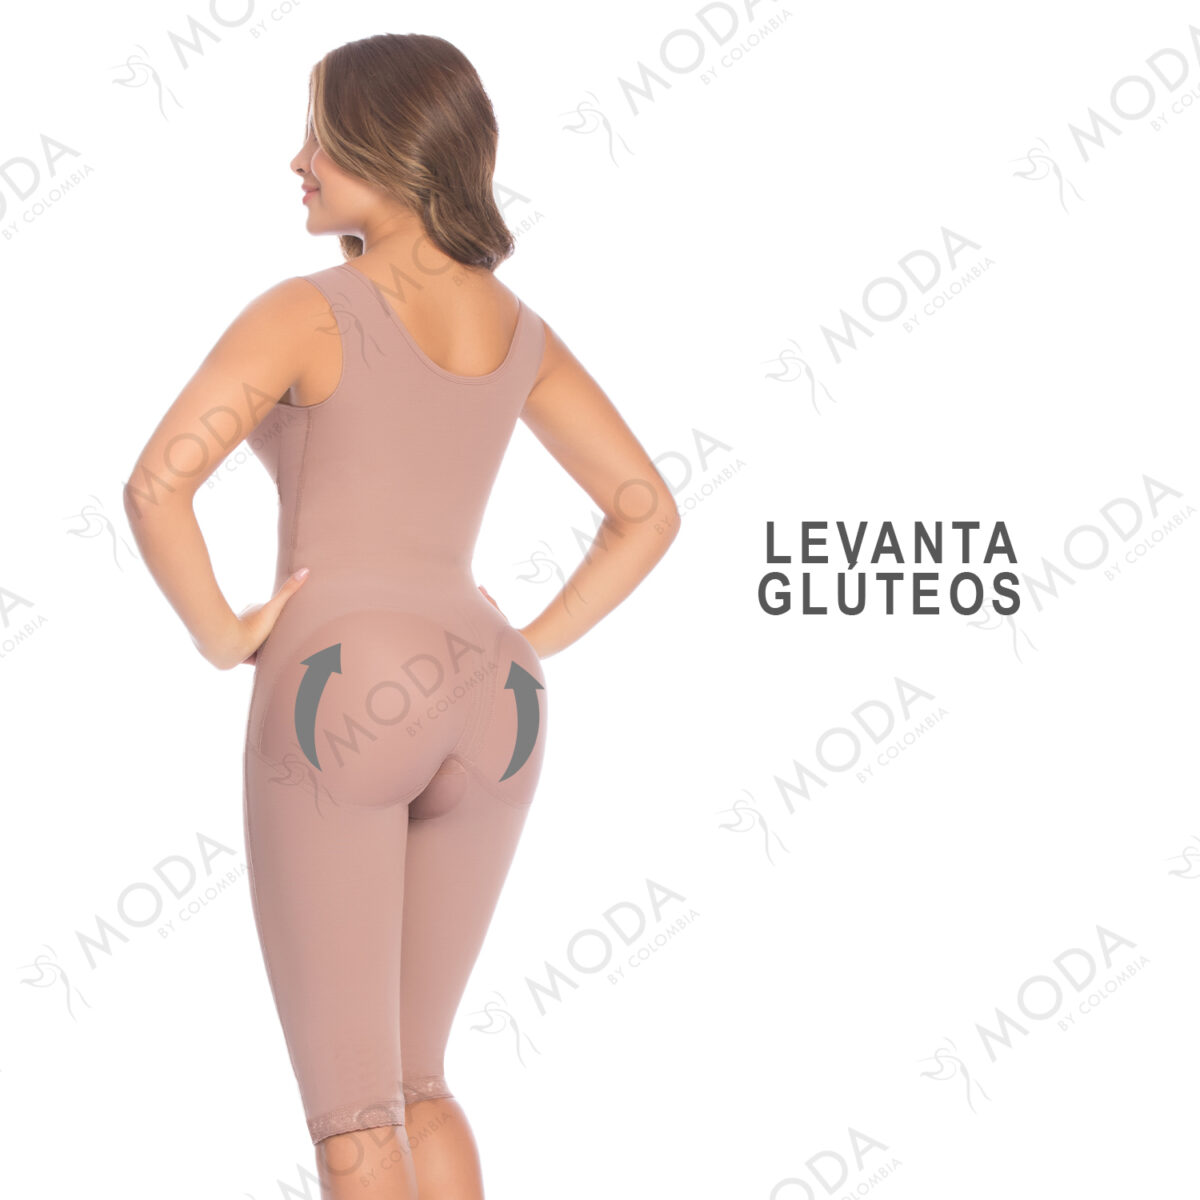 La faja colombiana con brasier incluido estiliza la figura al instante, define la cintura, y realza de forma natural los glúteos.